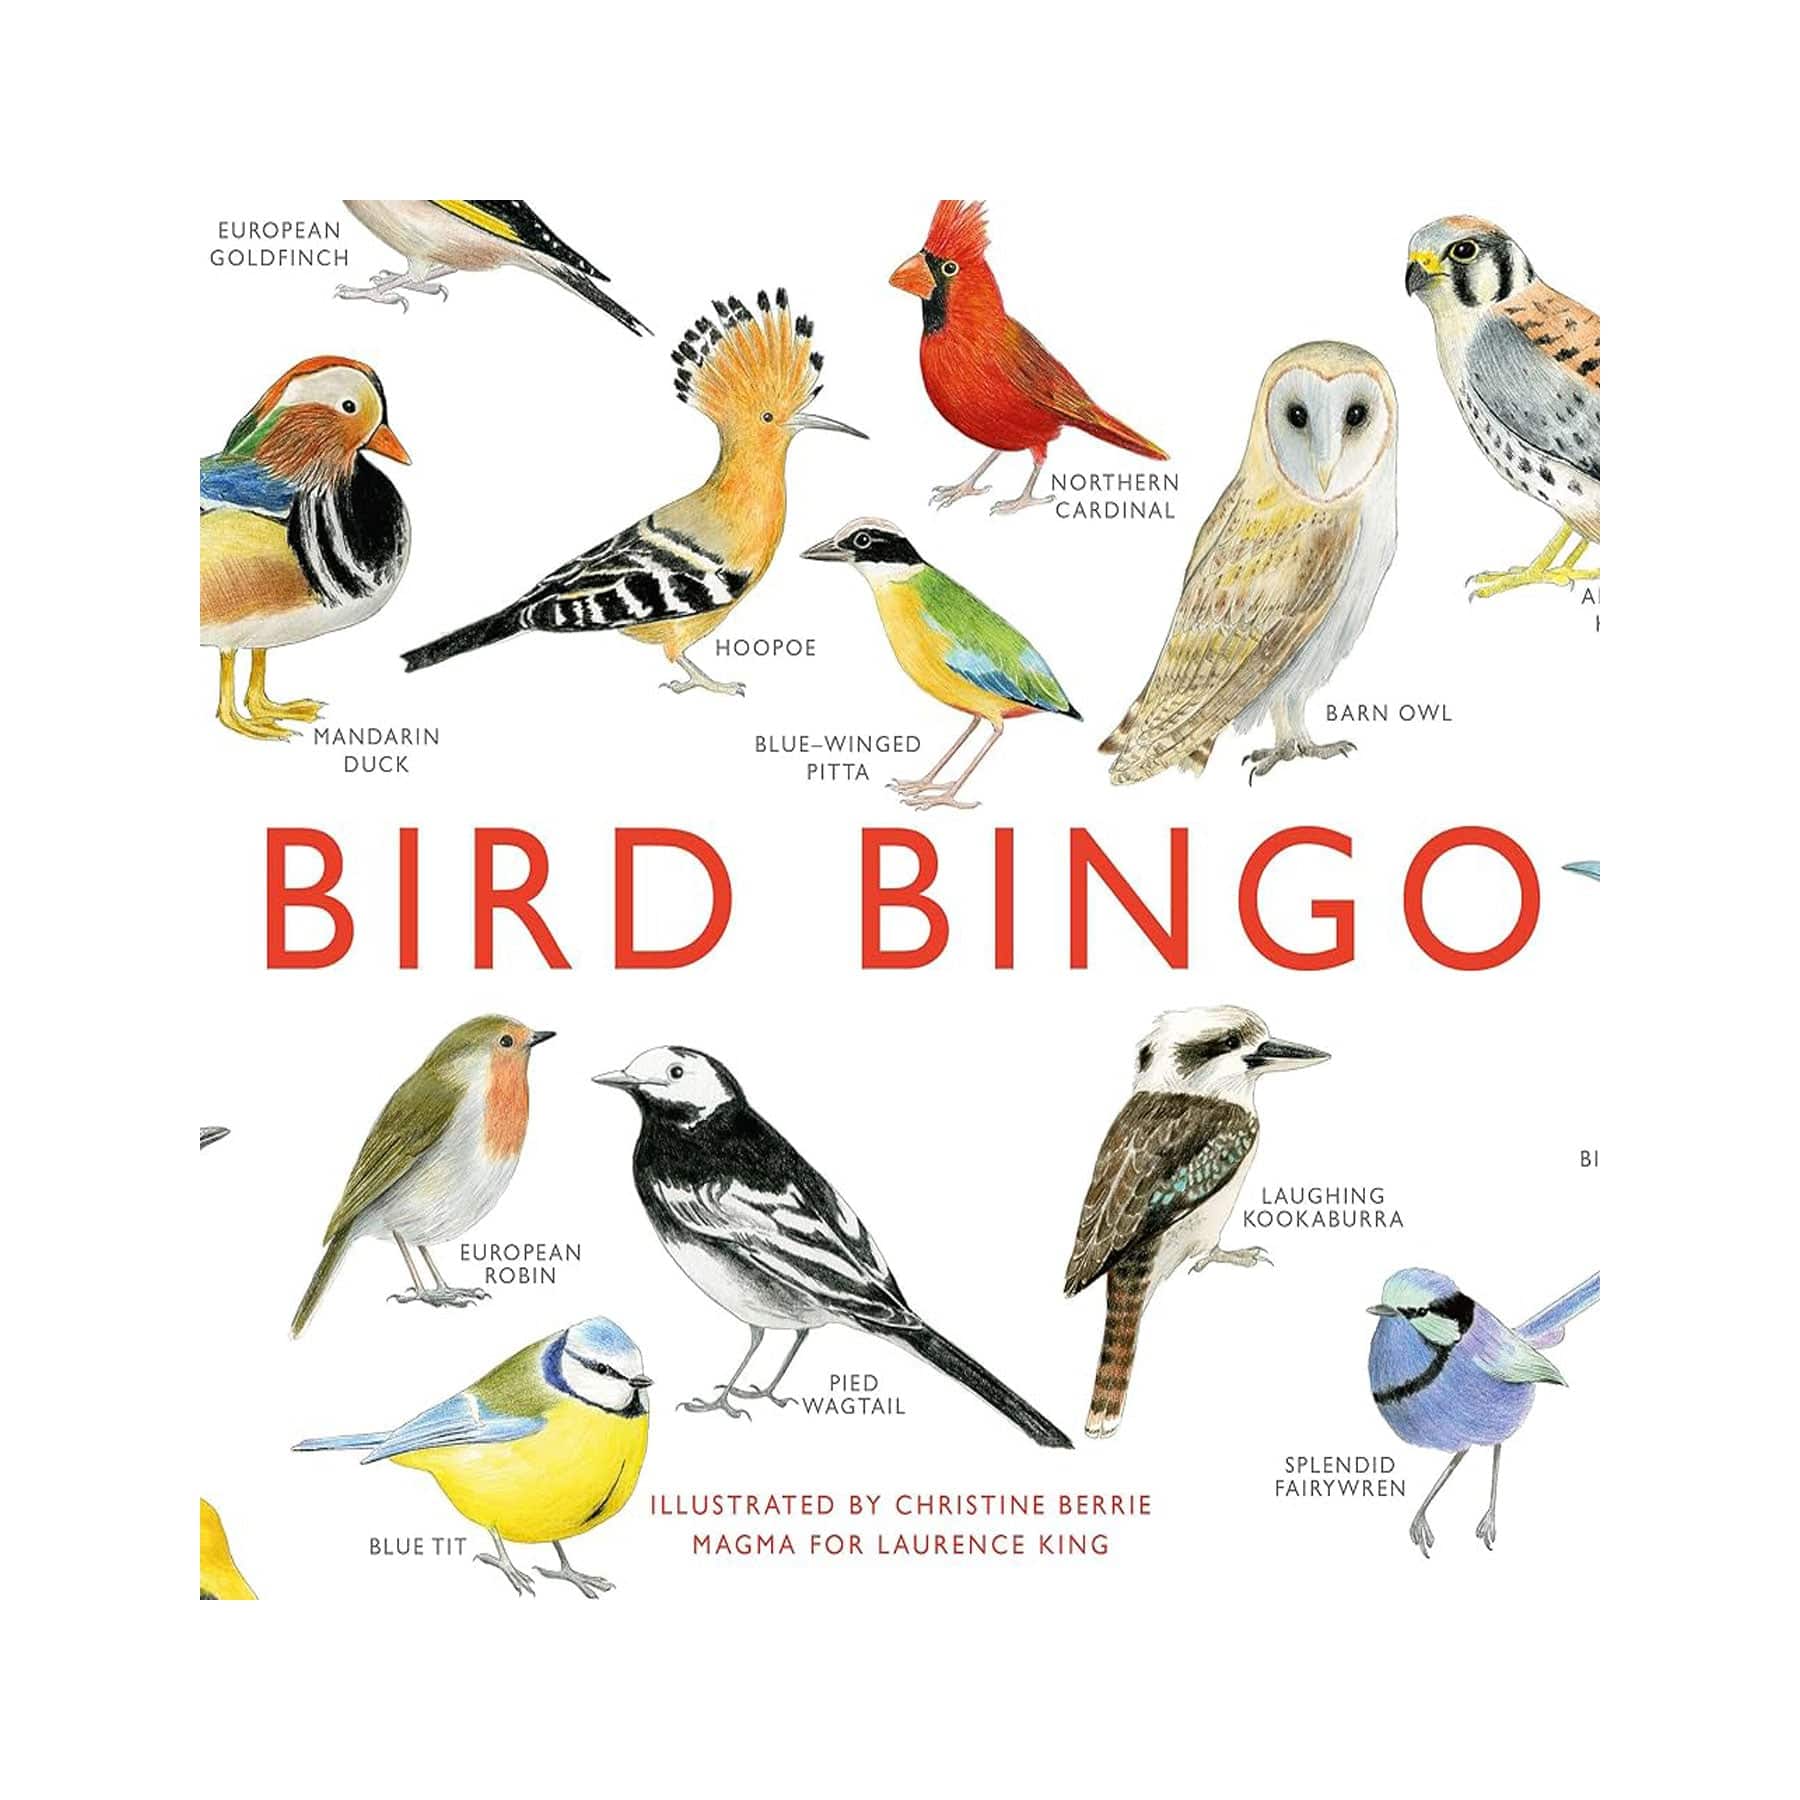 Bird bingo